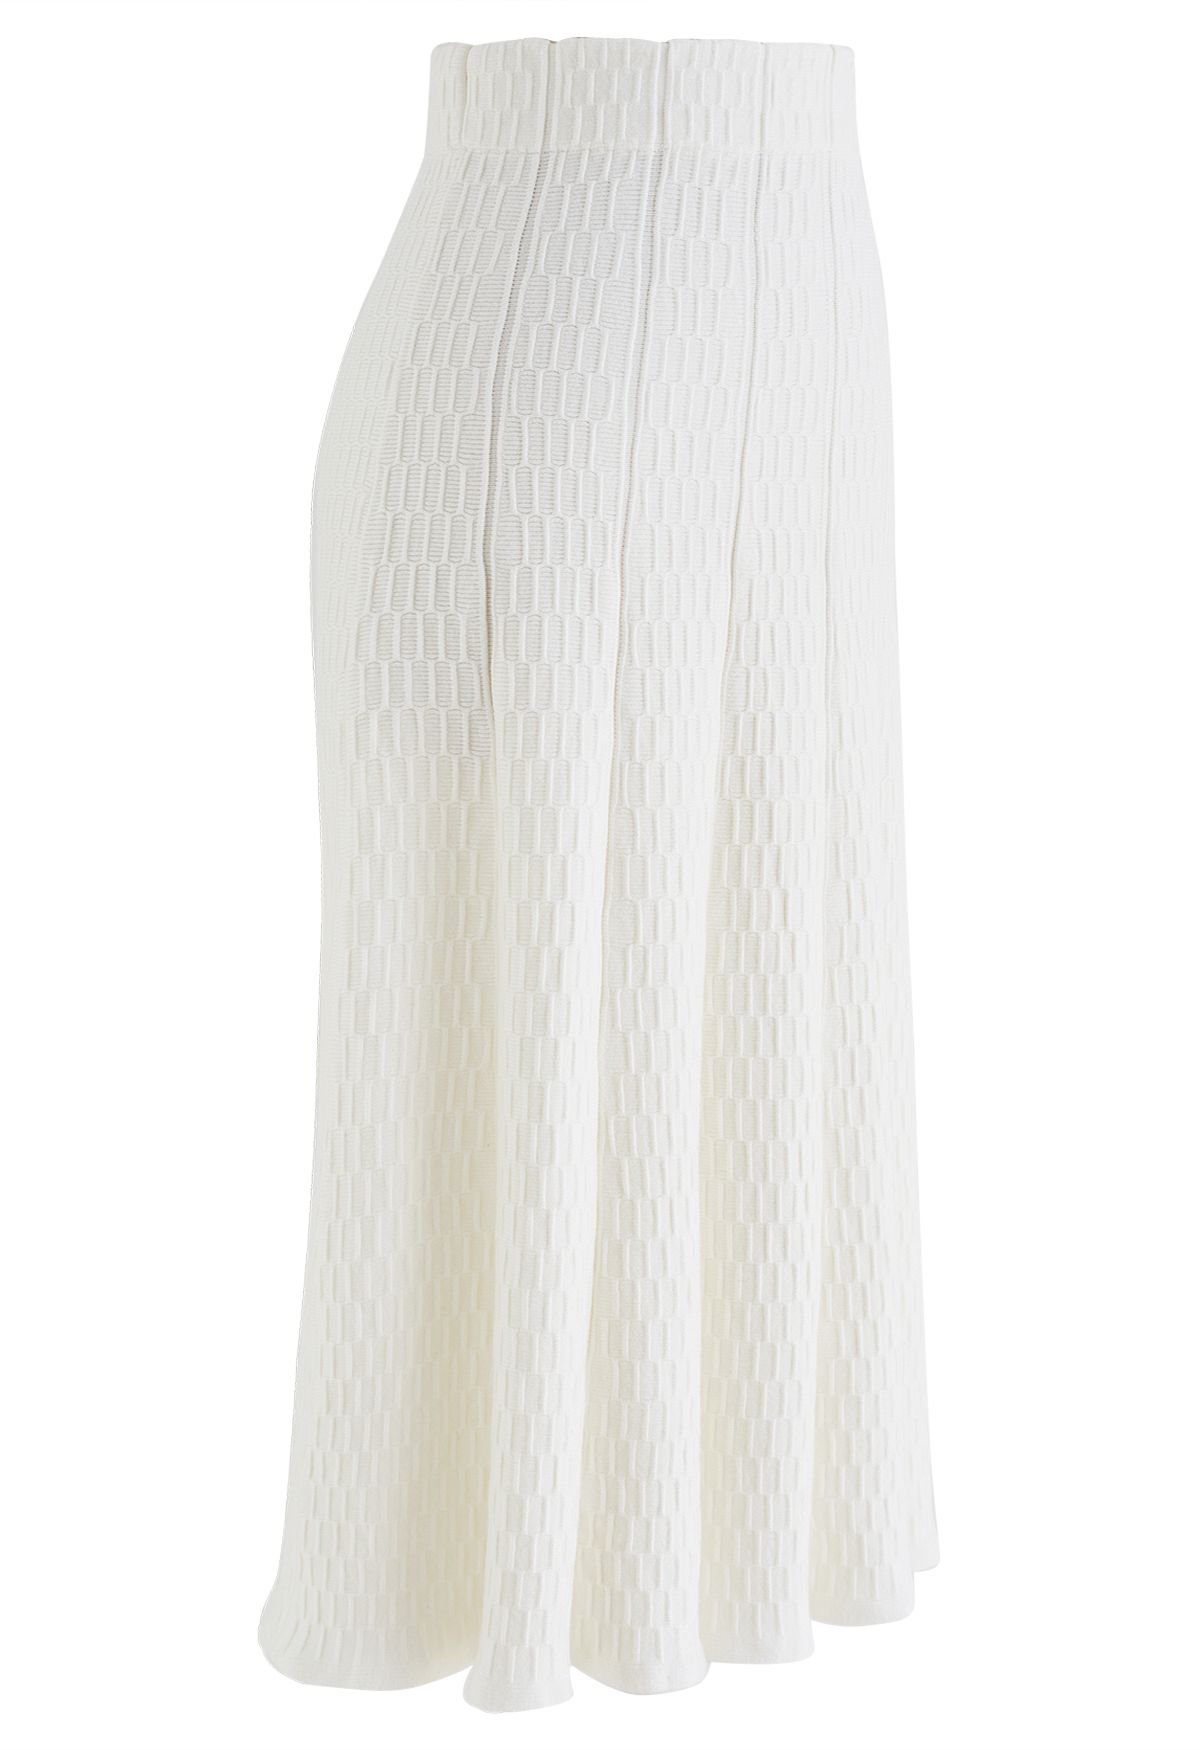 Rüschenrock aus weichem Strick mit geprägter Struktur in Weiß